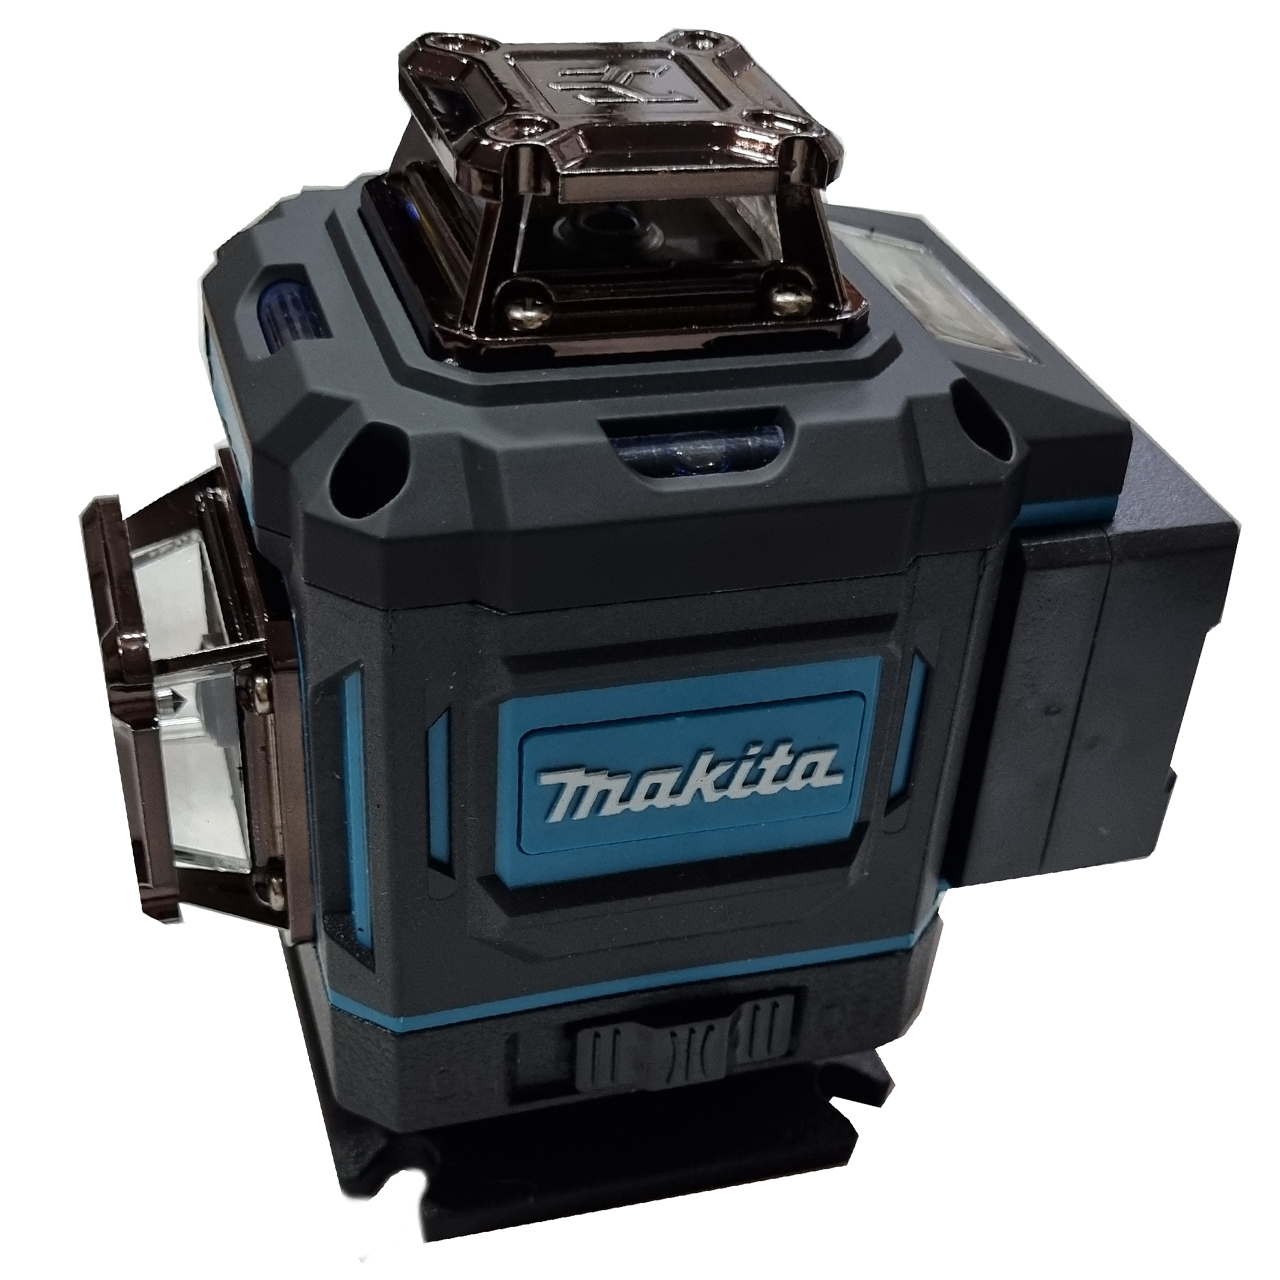 نکته خرید - قیمت روز تراز لیزری هوشمند دیجیتالی ماکیتا مدل Makita G-16 Line چهار بعدی هوشمند خرید